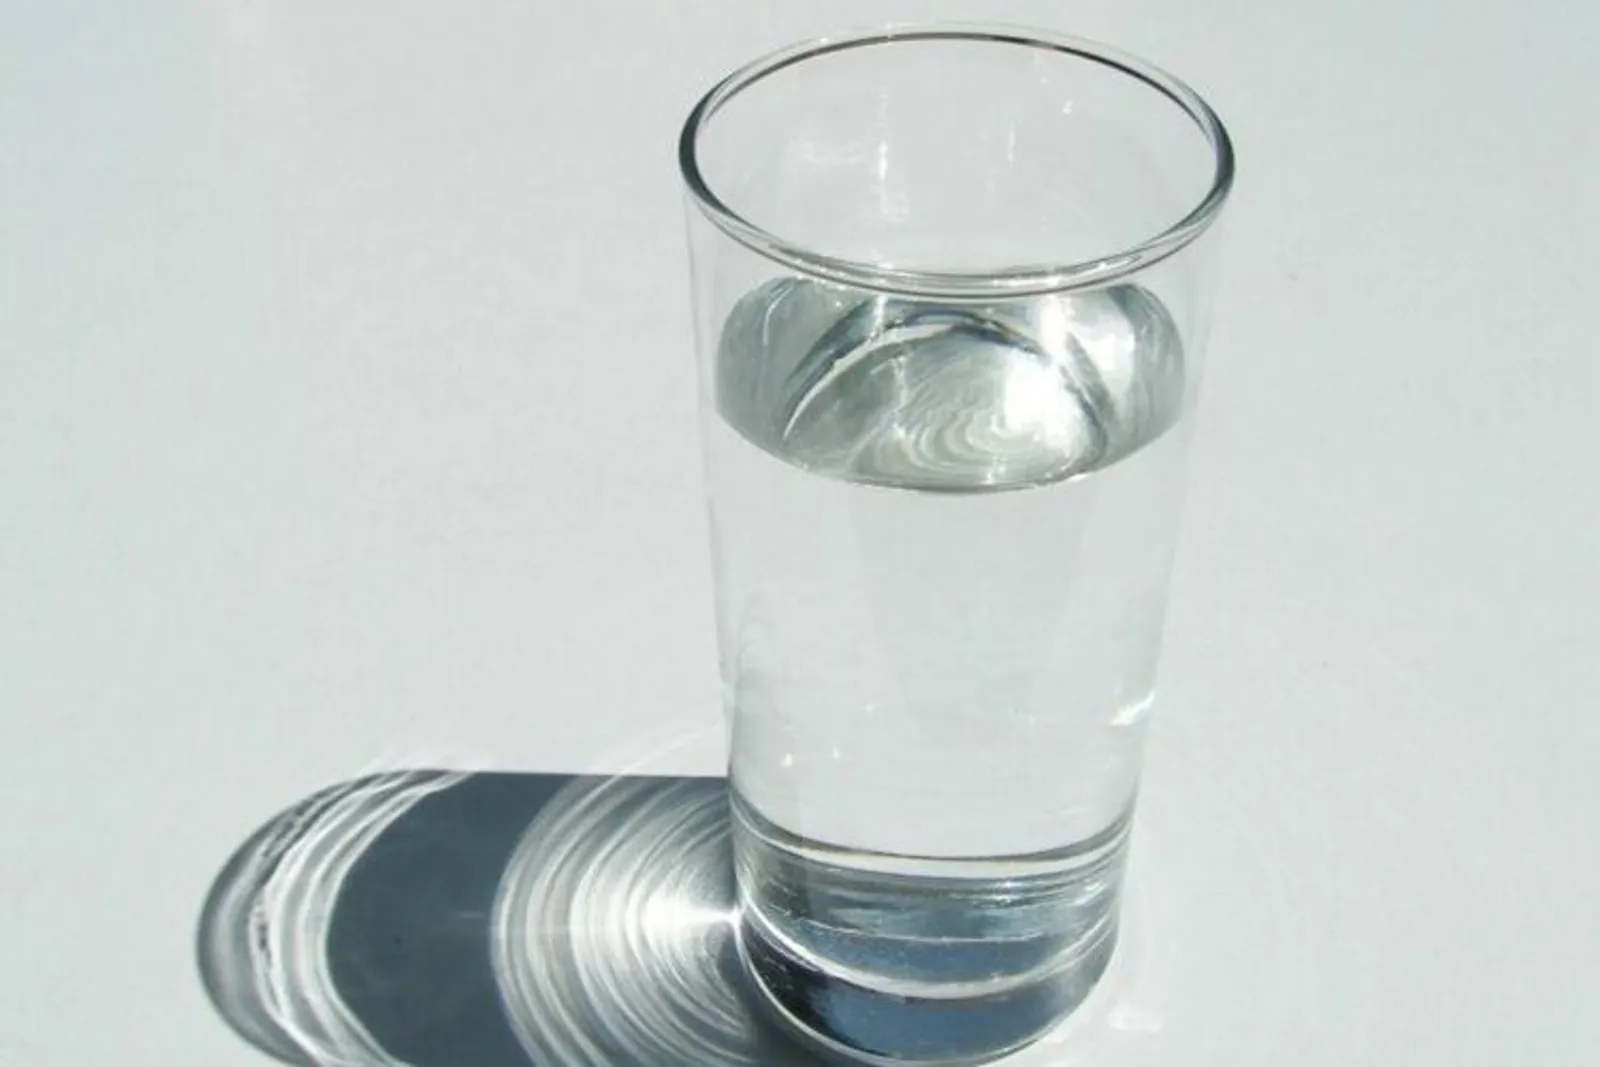 7 Cara Minum Air Putih yang Tepat untuk Turun Berat Badan dengan Cepat